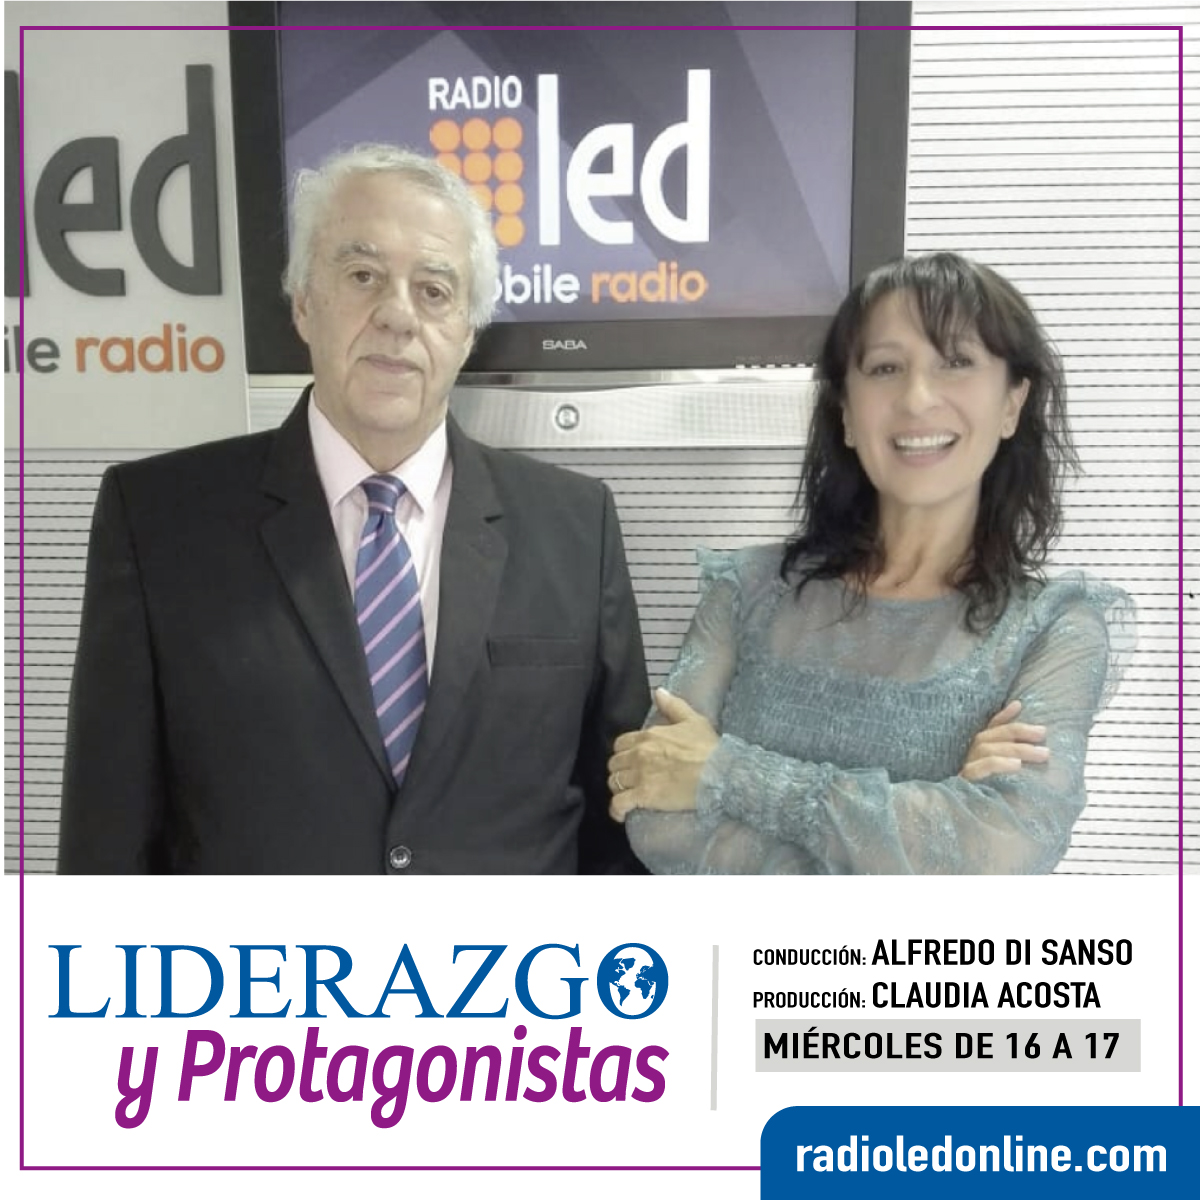 #Podcast Liderazgo y Protagonistas 04.07: #Juguetes #TrabajoInclusivo @SabriDimare @RastiArg y más!